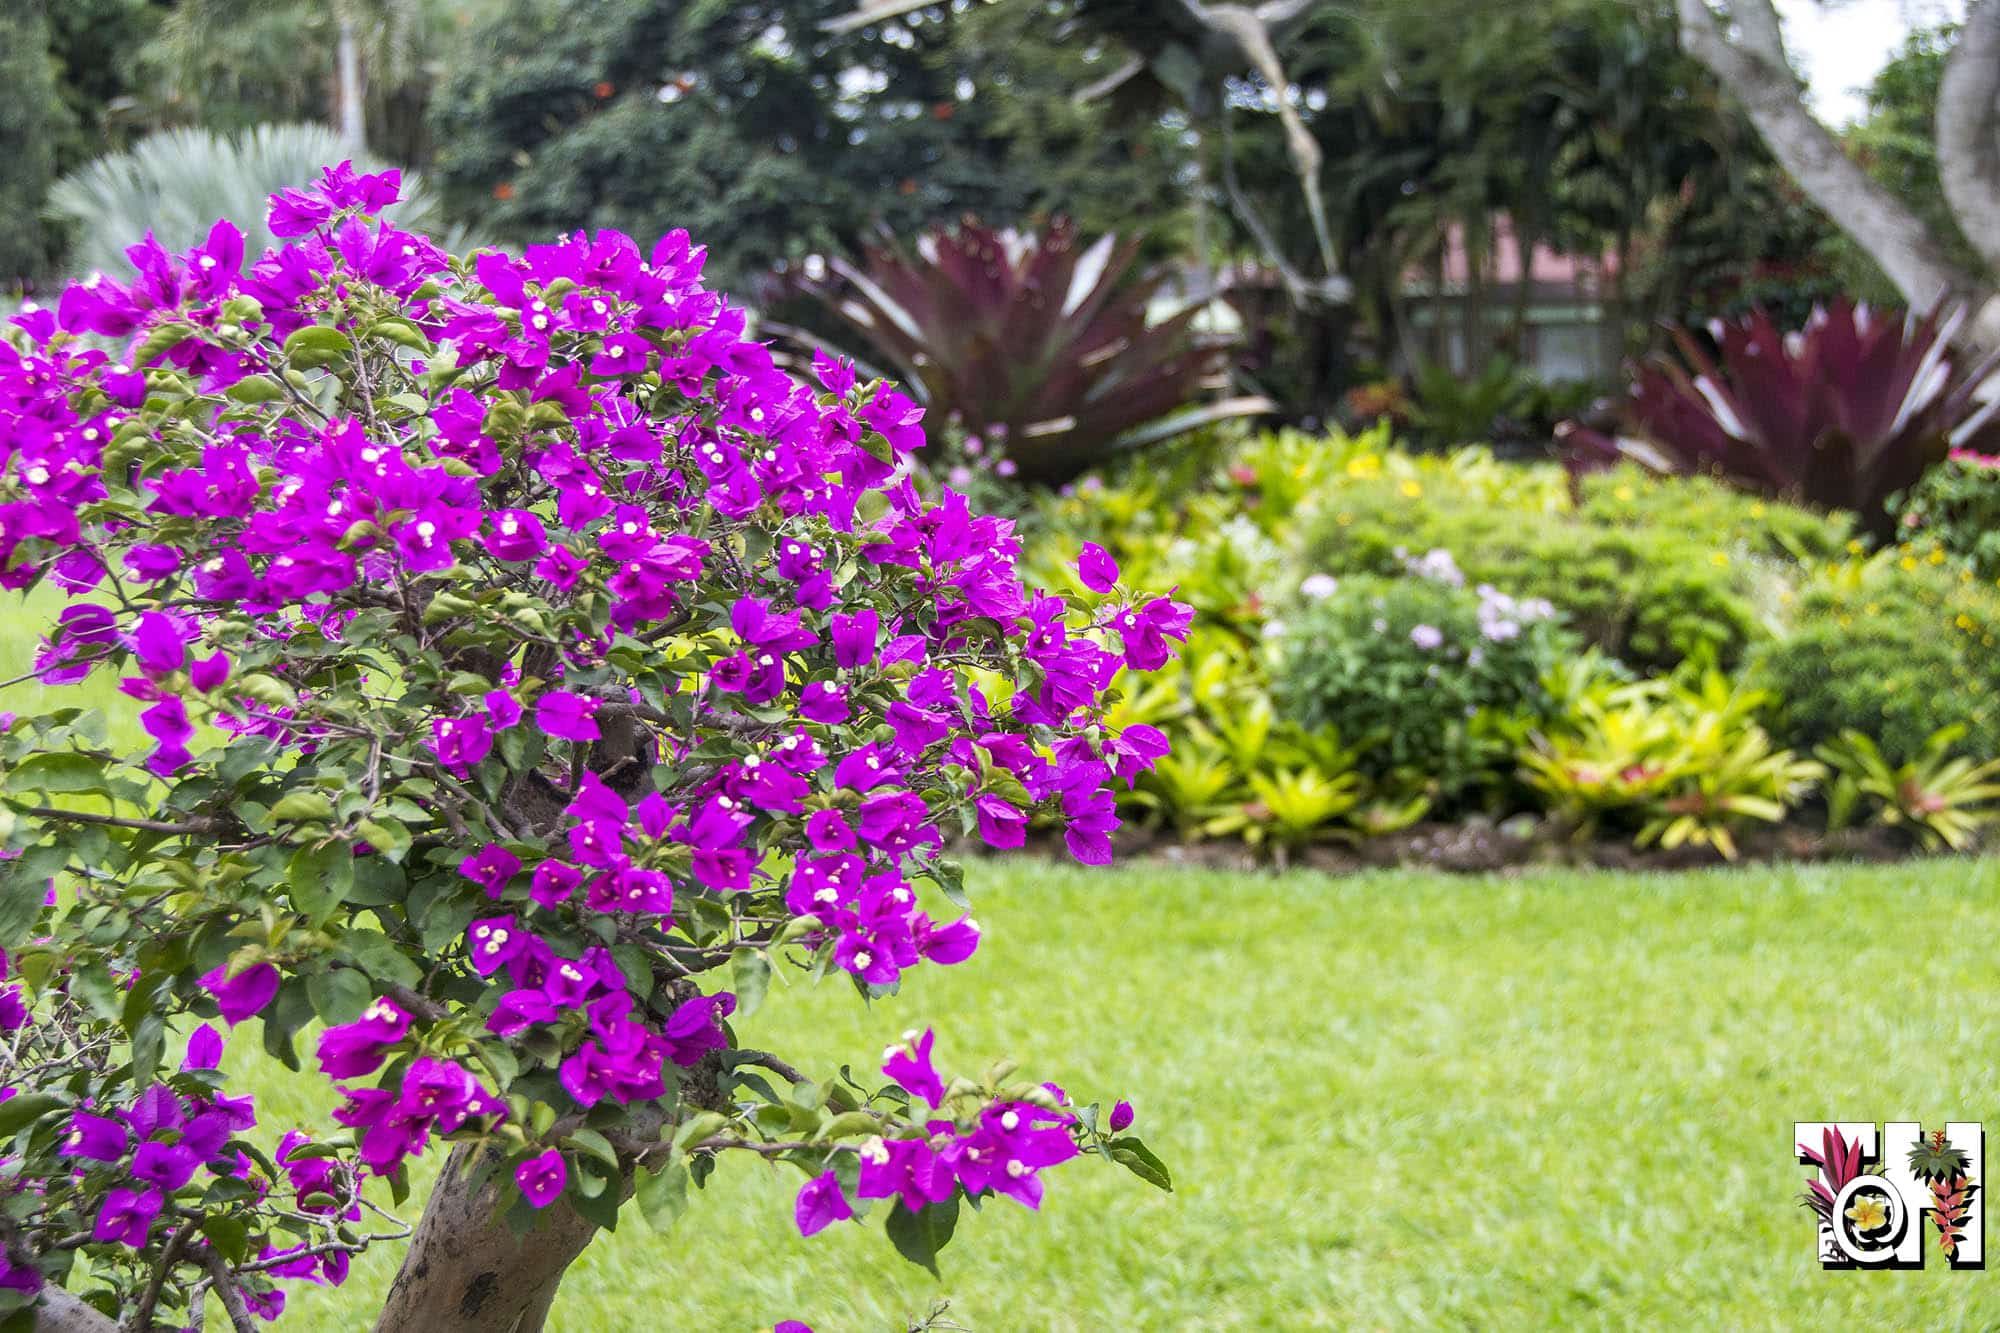 Best Tropical Garden Hotels - Hotel Bougainvillea